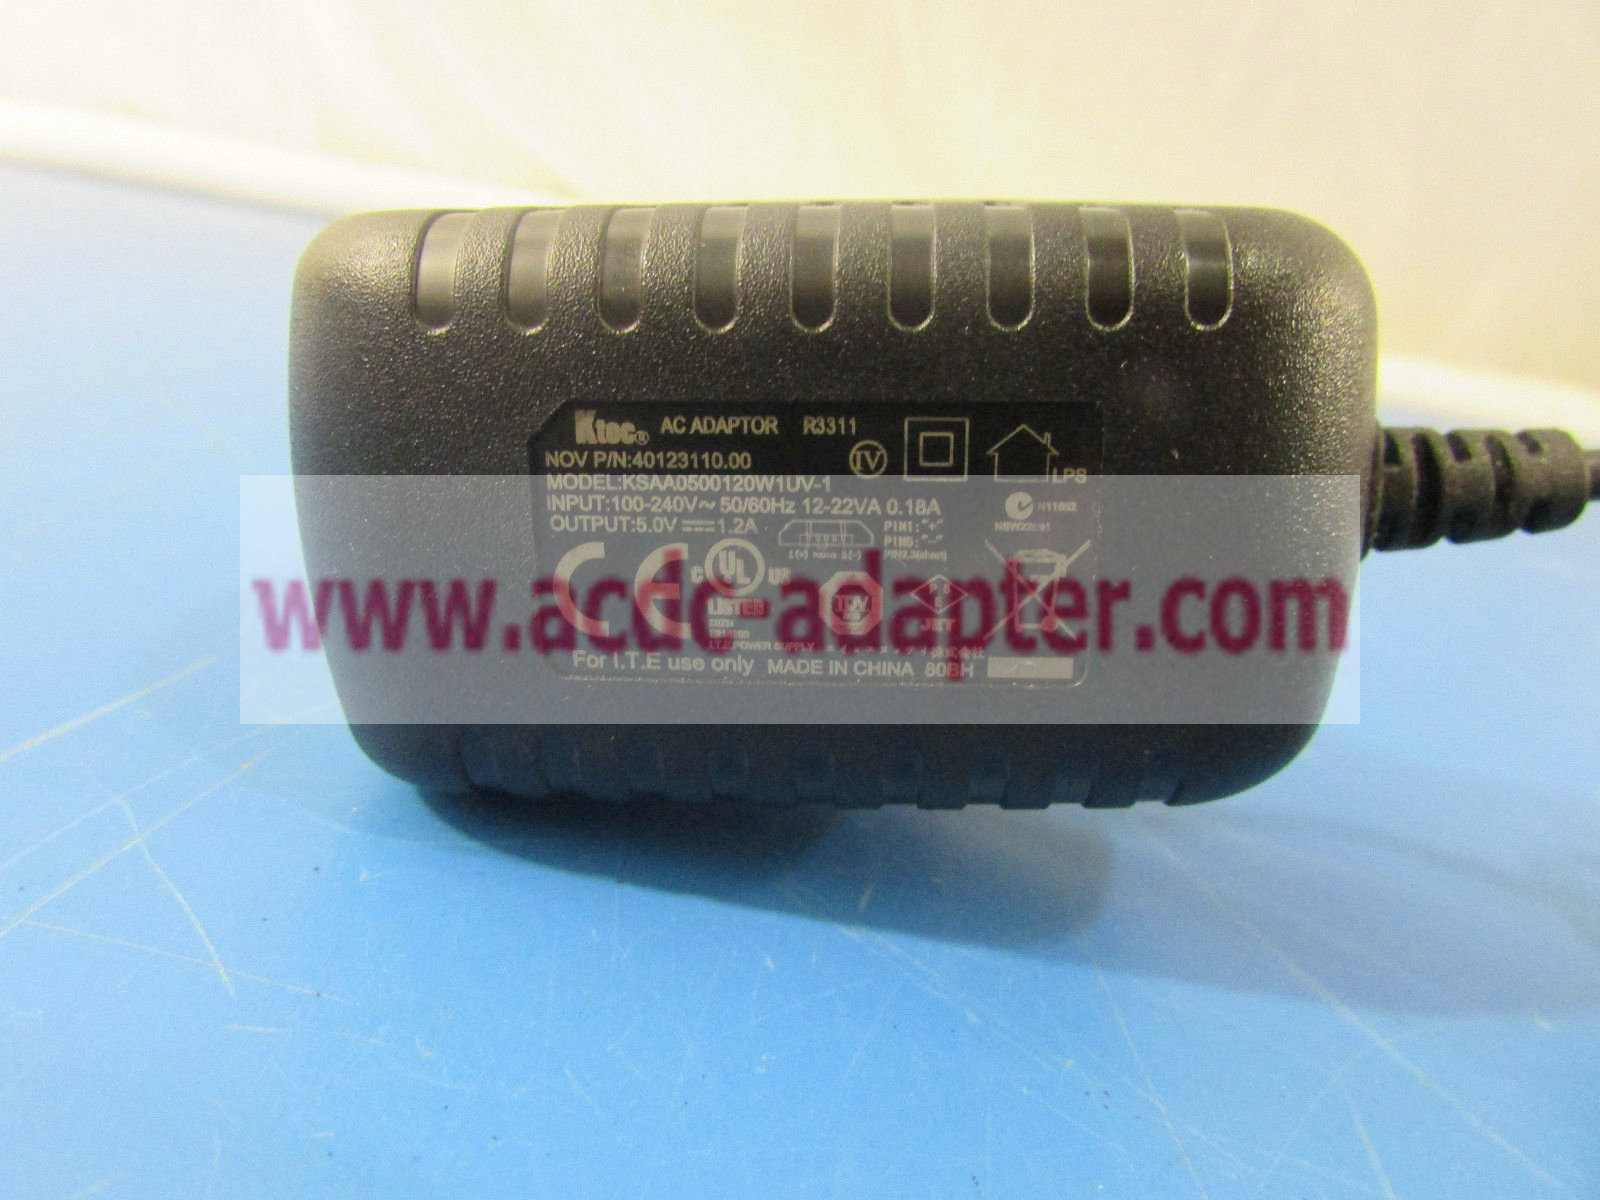 NEW KTec KSAA0500120W1UV-1 40123110.00 5.0V 1.2A AC DC USB Power Supply Adapter